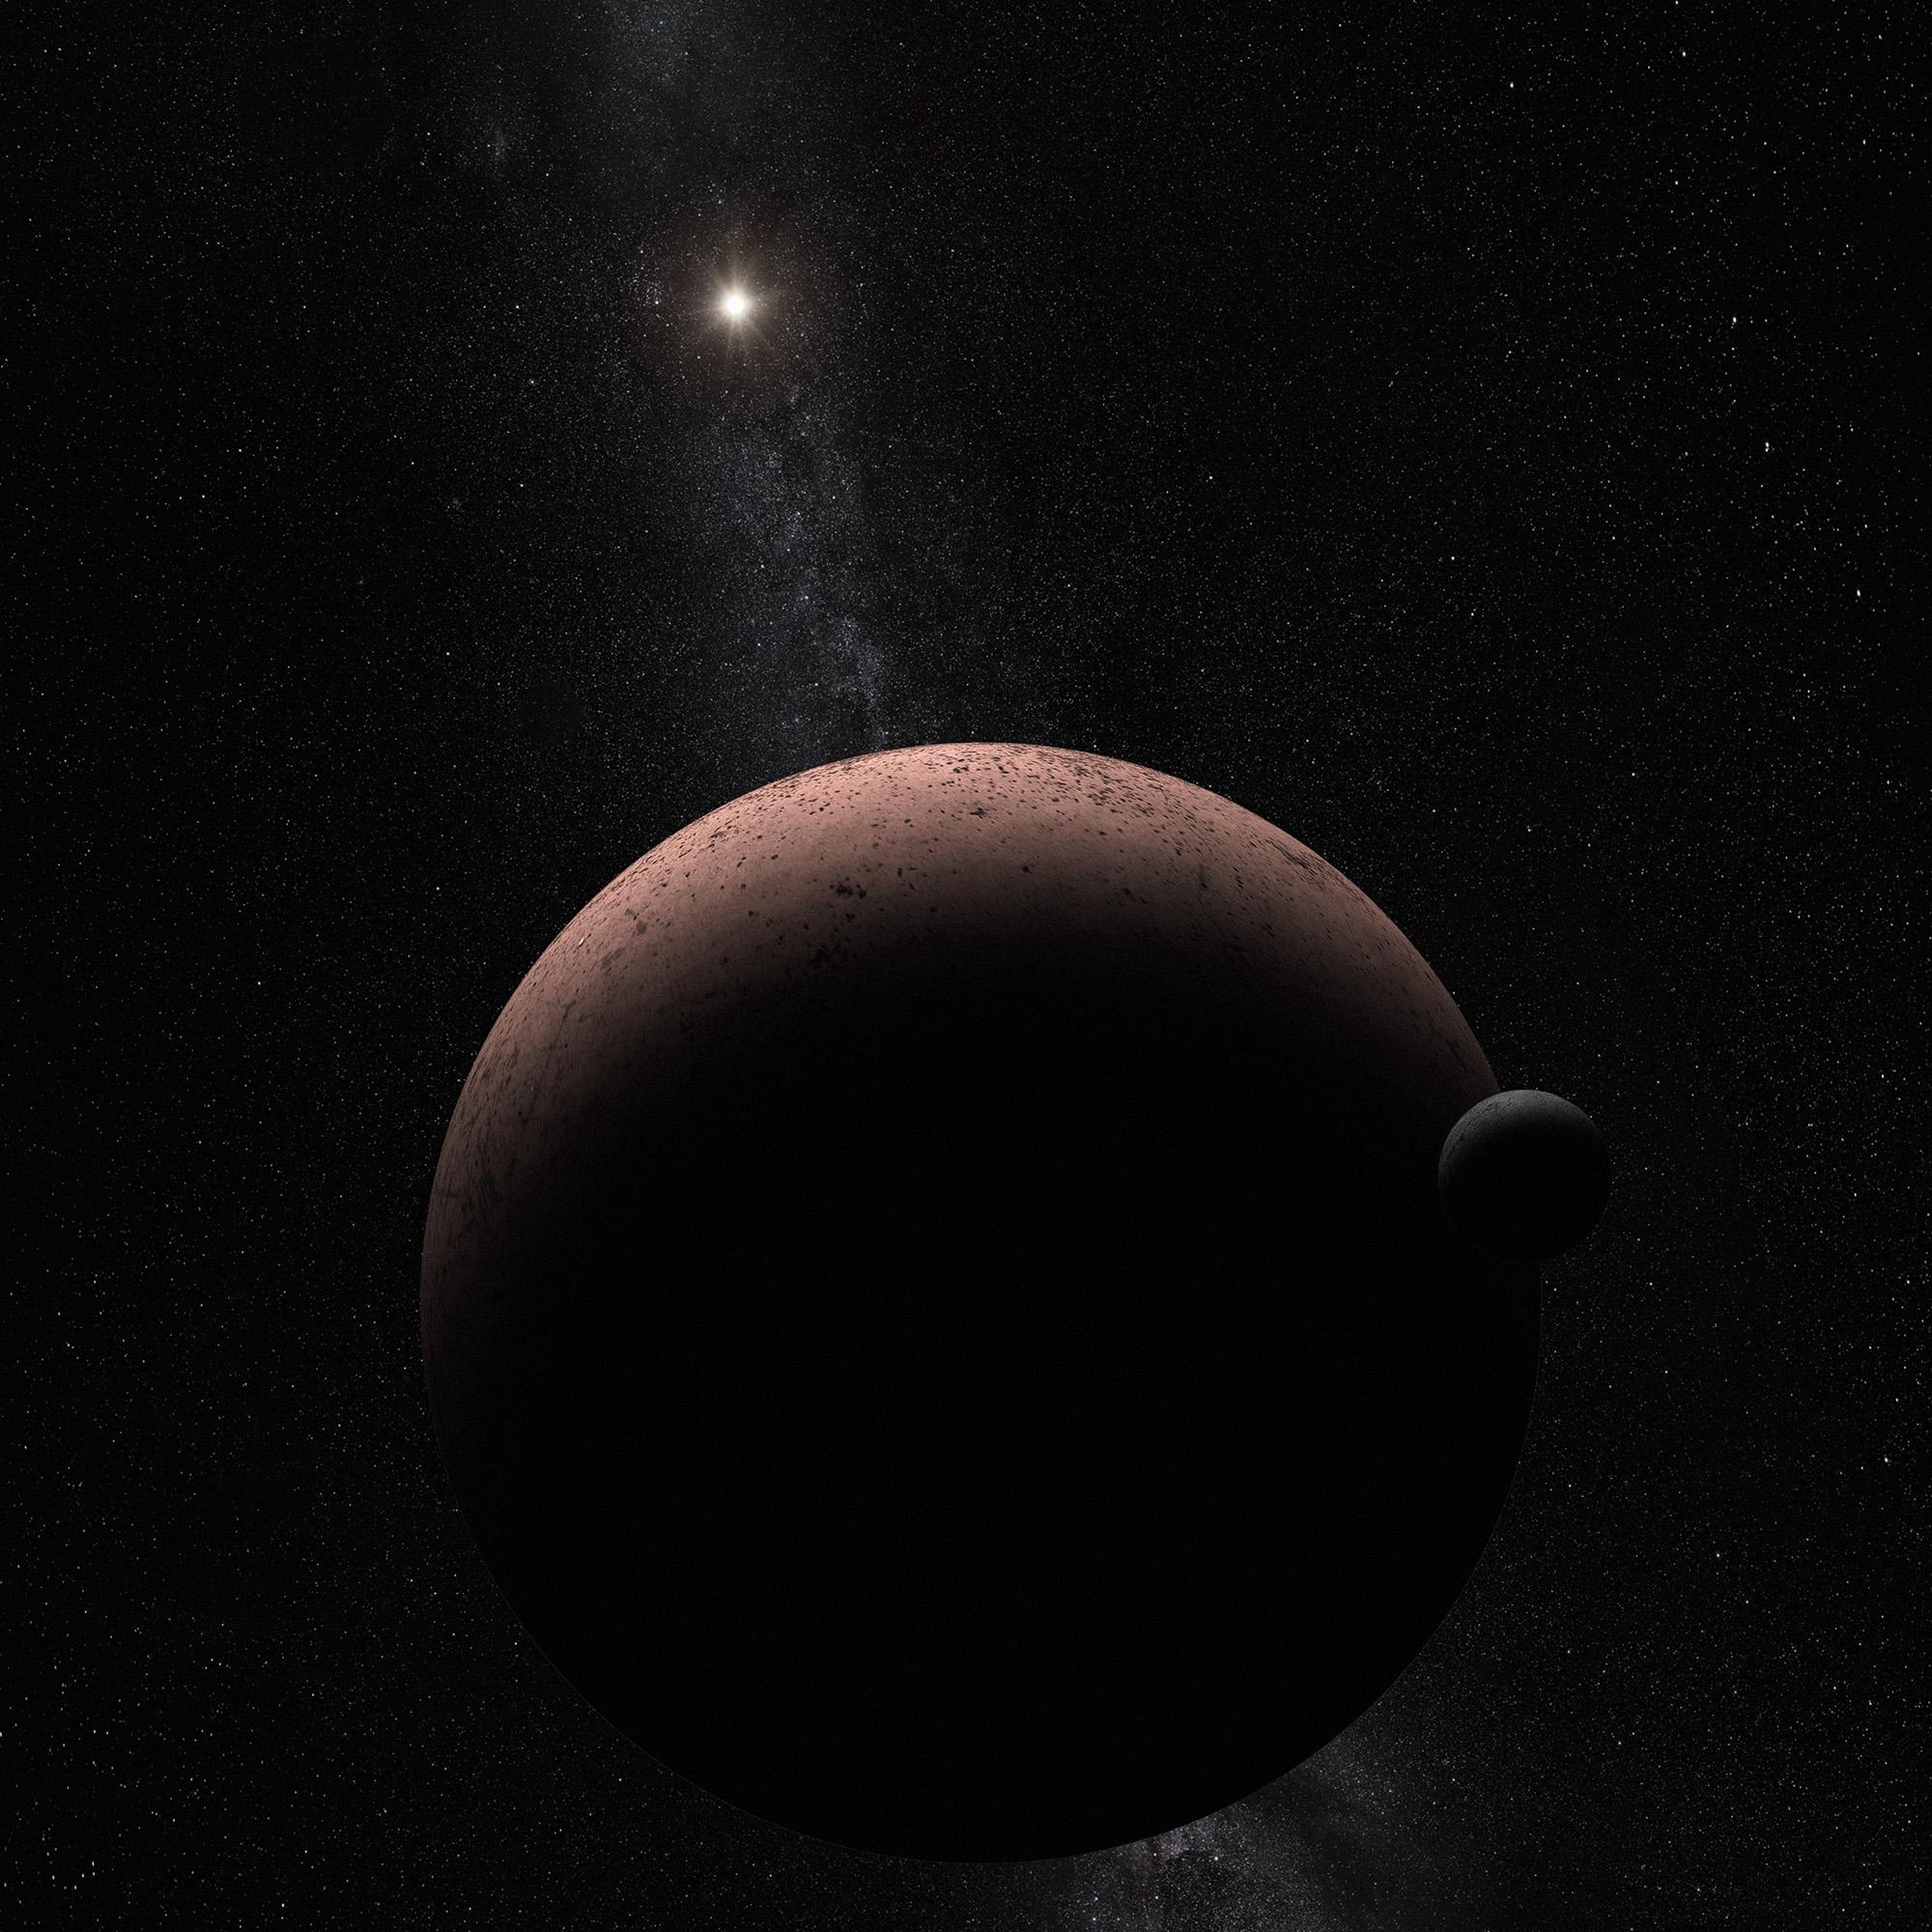 كوكب "ماكيماكي" الثاني سطوعاً في حزام "كايپر" وقمره "MK2" ذو السطح الداكن كالفحم يعكسان ضوء الشمس في مشهدٍ مُتَخَيَّل لجبهة غير مُستَكشَفة من المجموعة الشمسيّة.